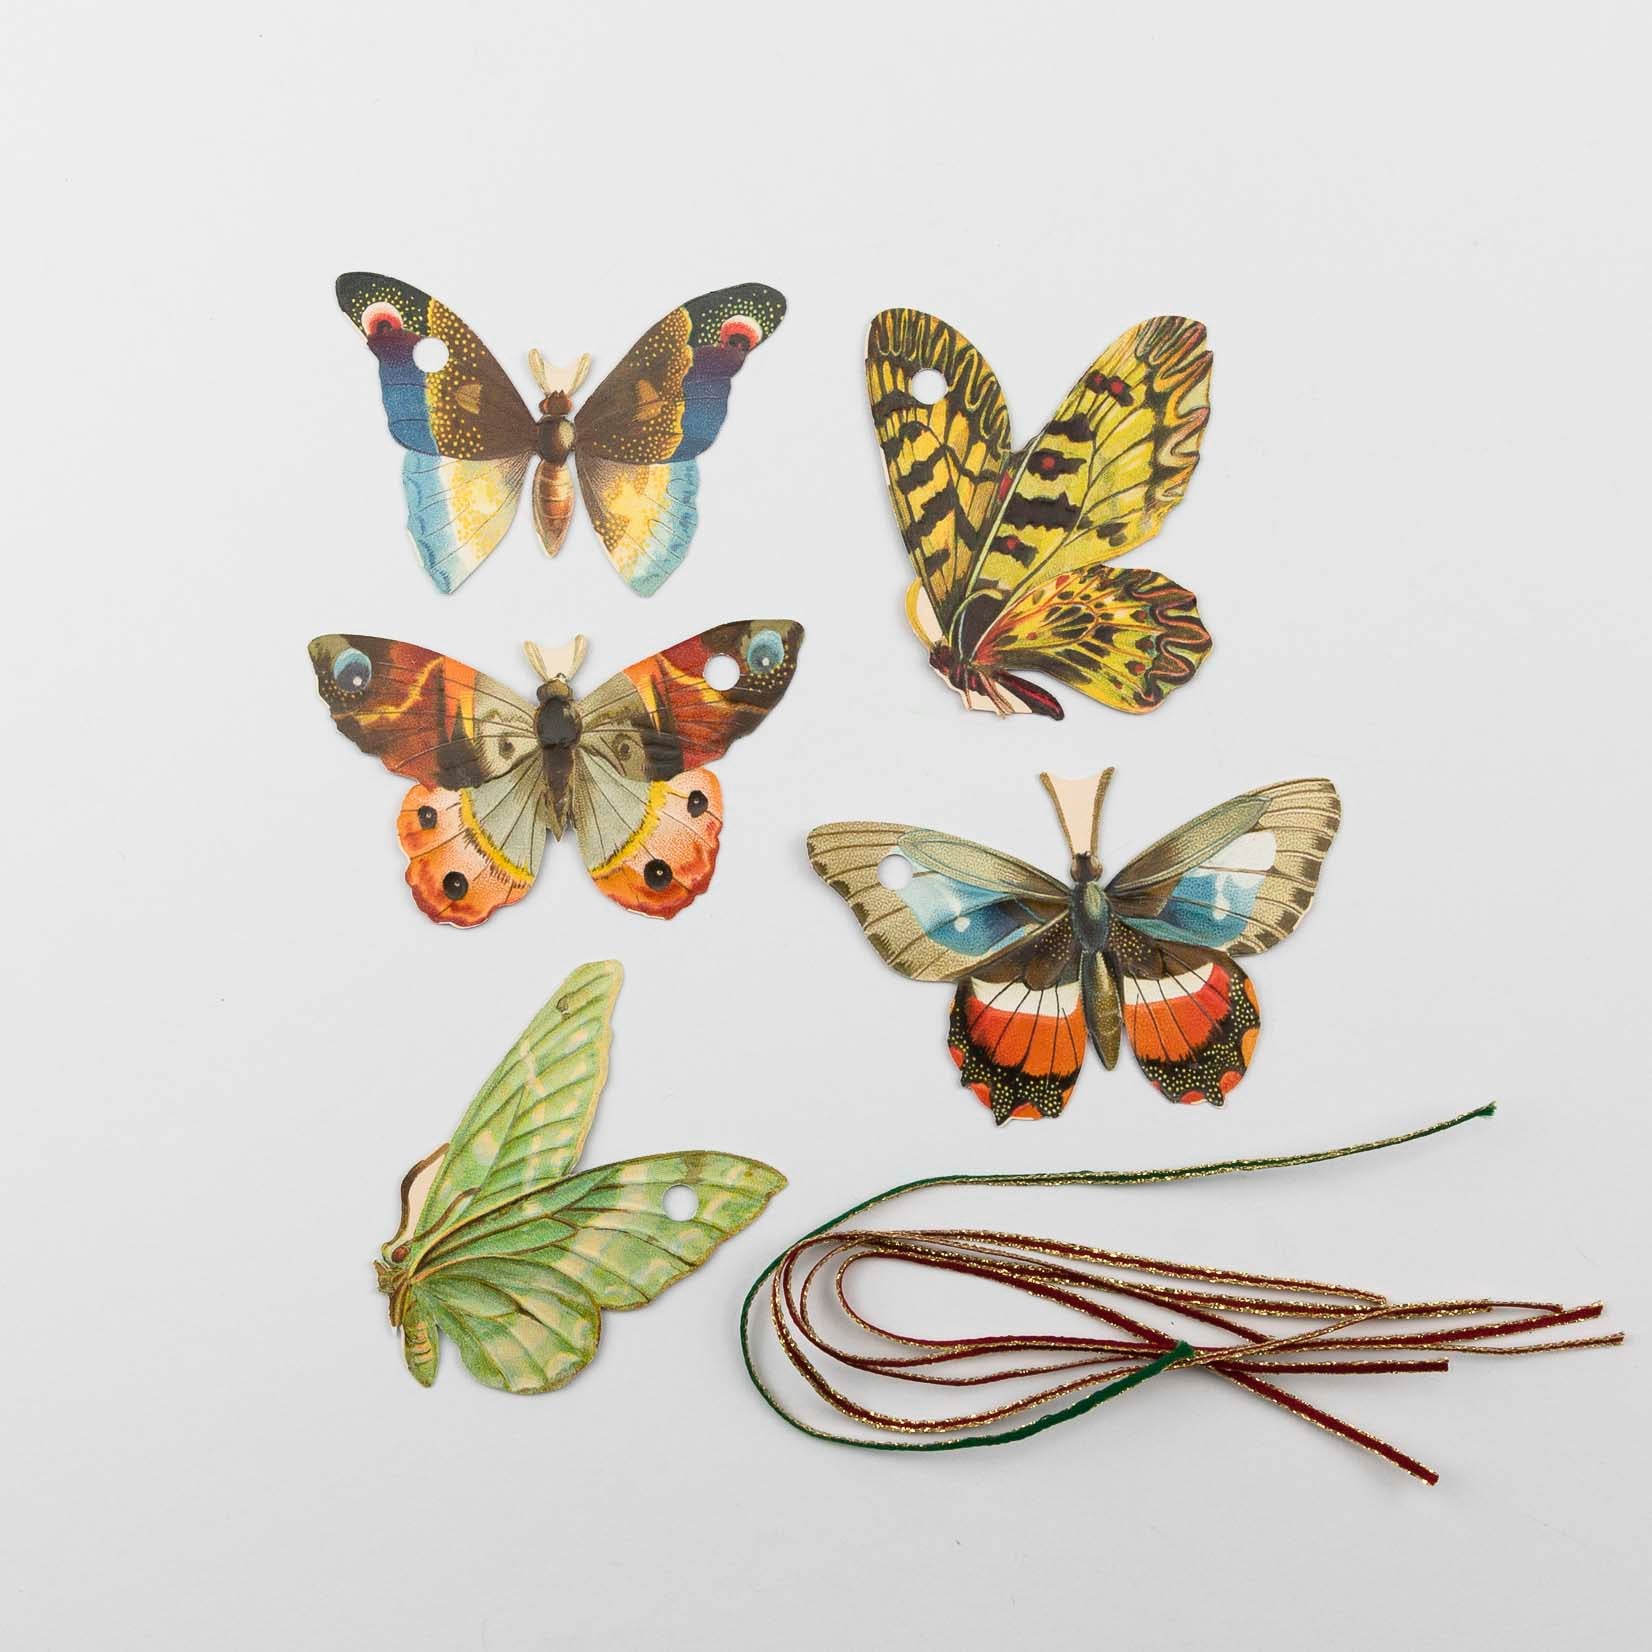 Glanzbilder Poesiealbum Bilder Ornamente Glanzbildchen Reliefs Oblaten Anhänger Schmetterlinge Anhänger Dekoanhänger Geschenkanhänger